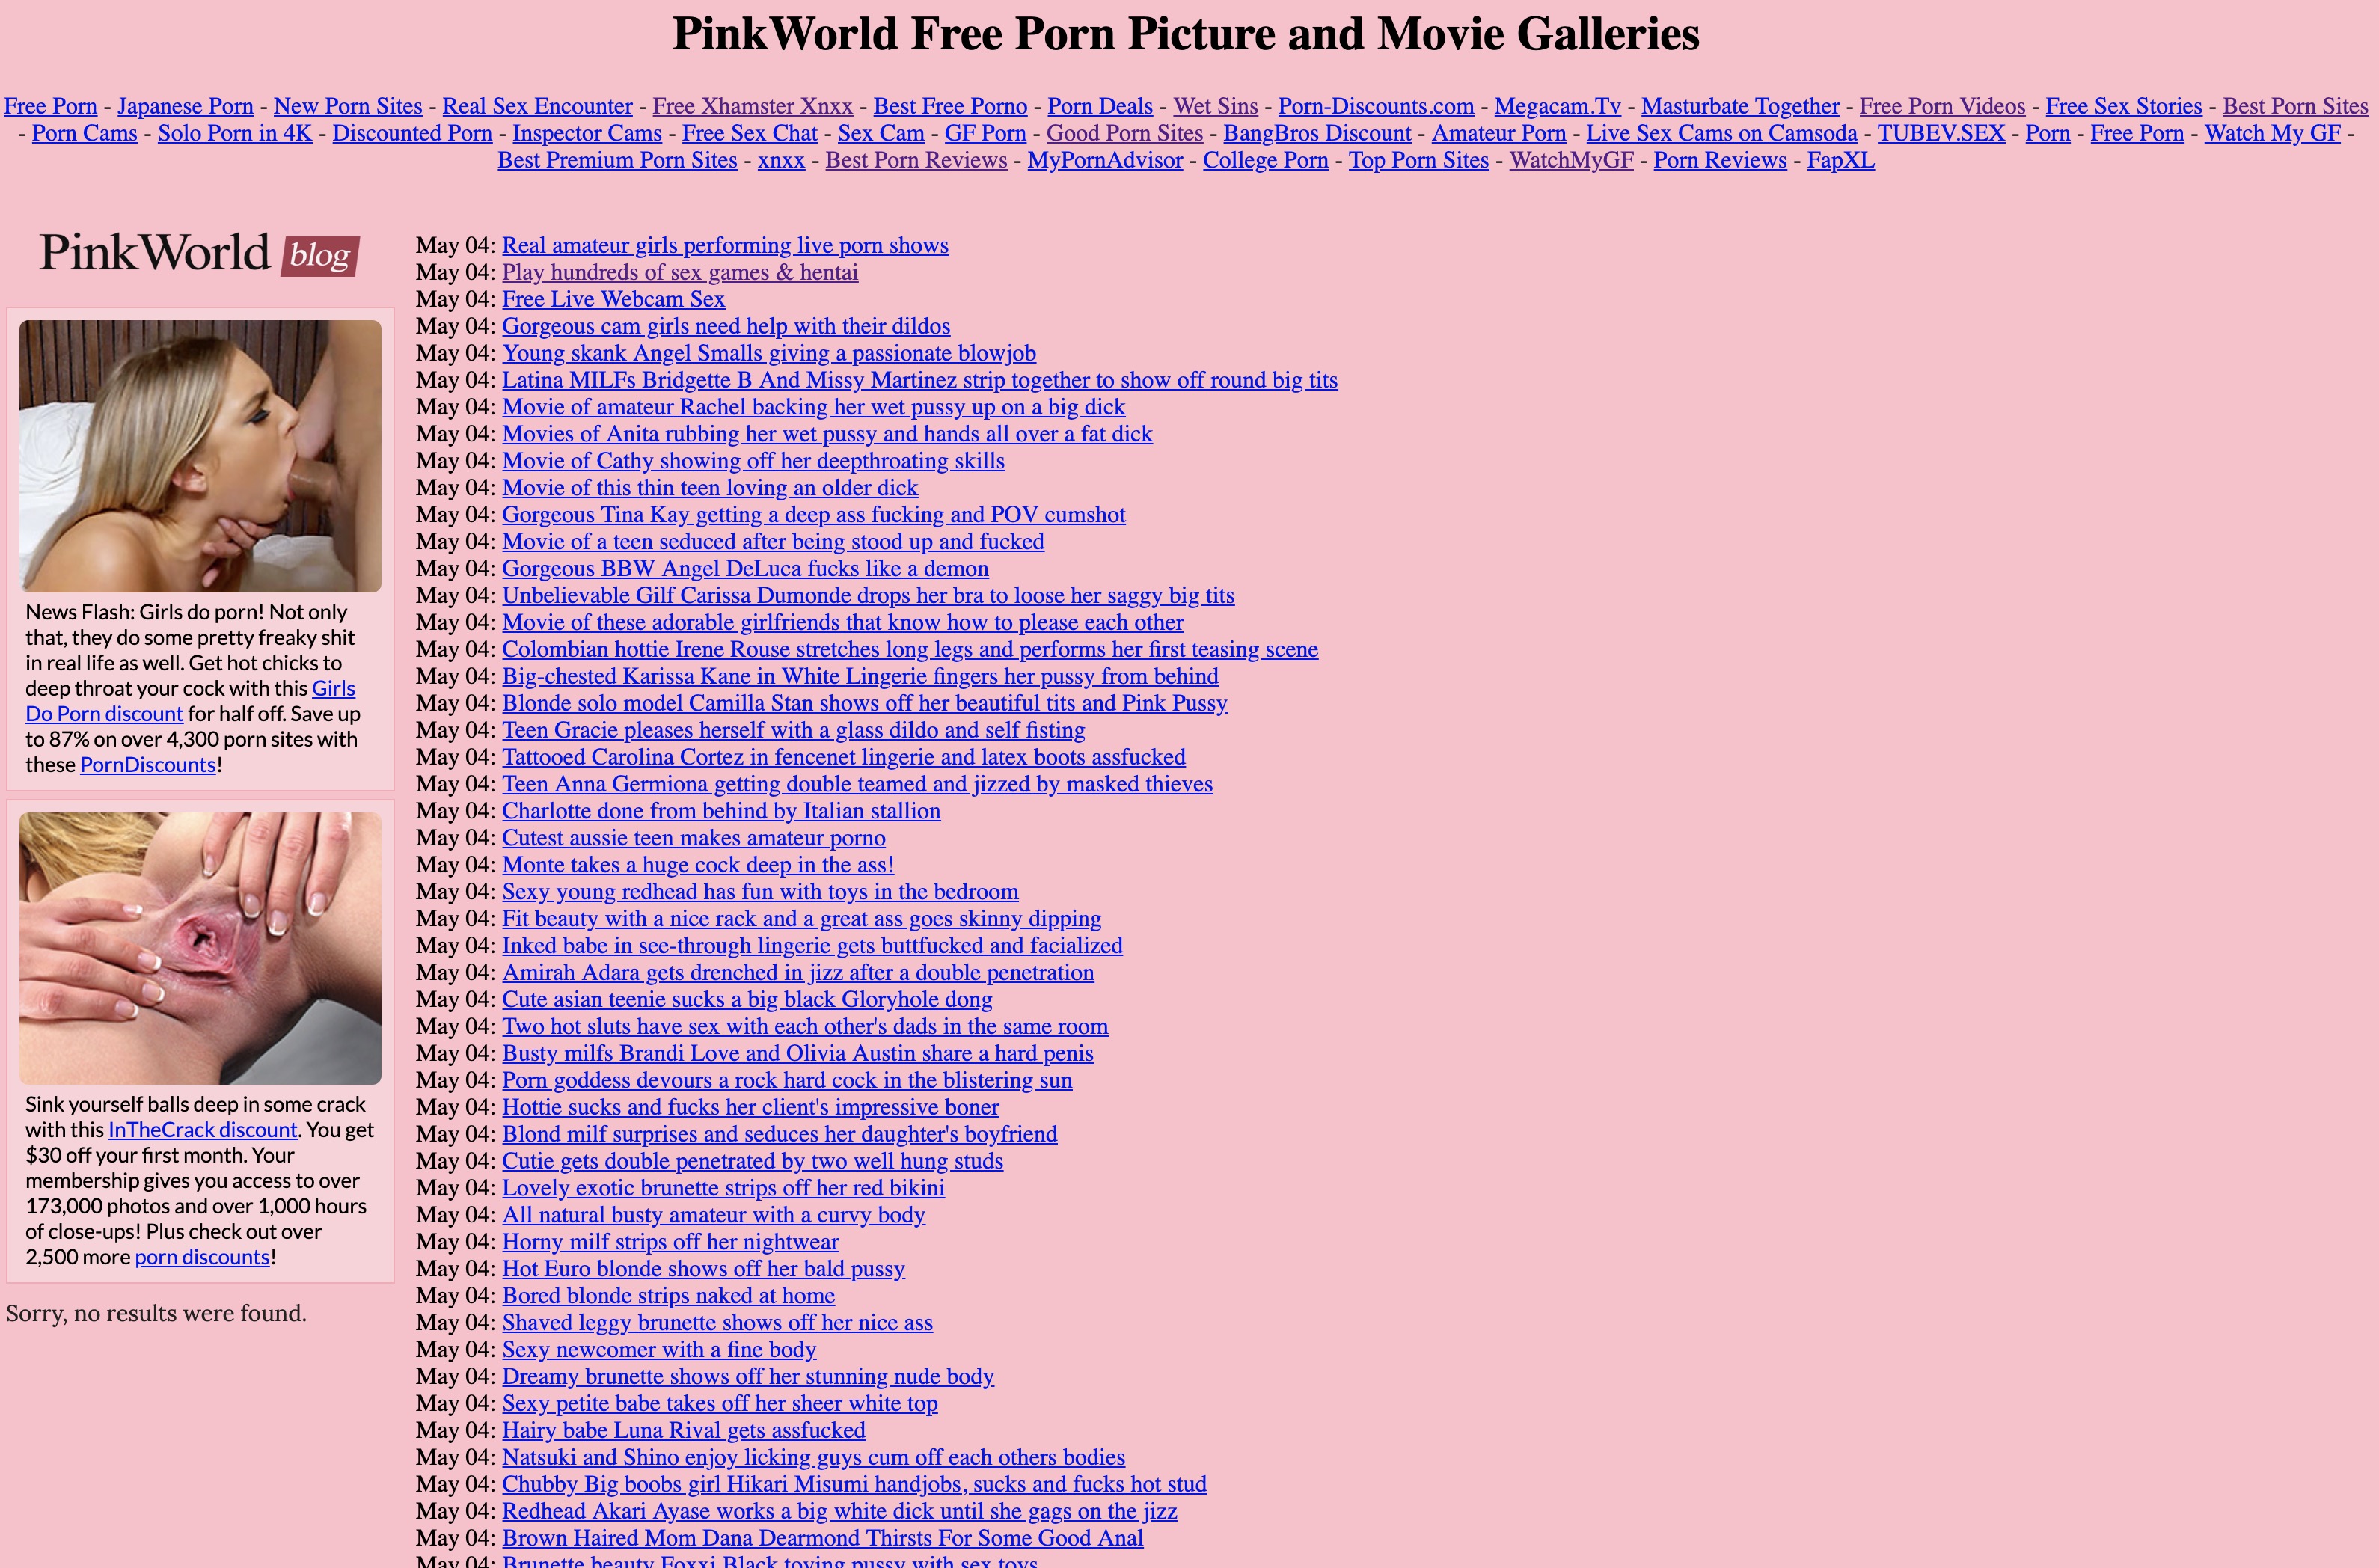 3180px x 2096px - PinkWorld + MÃ¡s sitios porno como Pinkworld.com - Porndabster